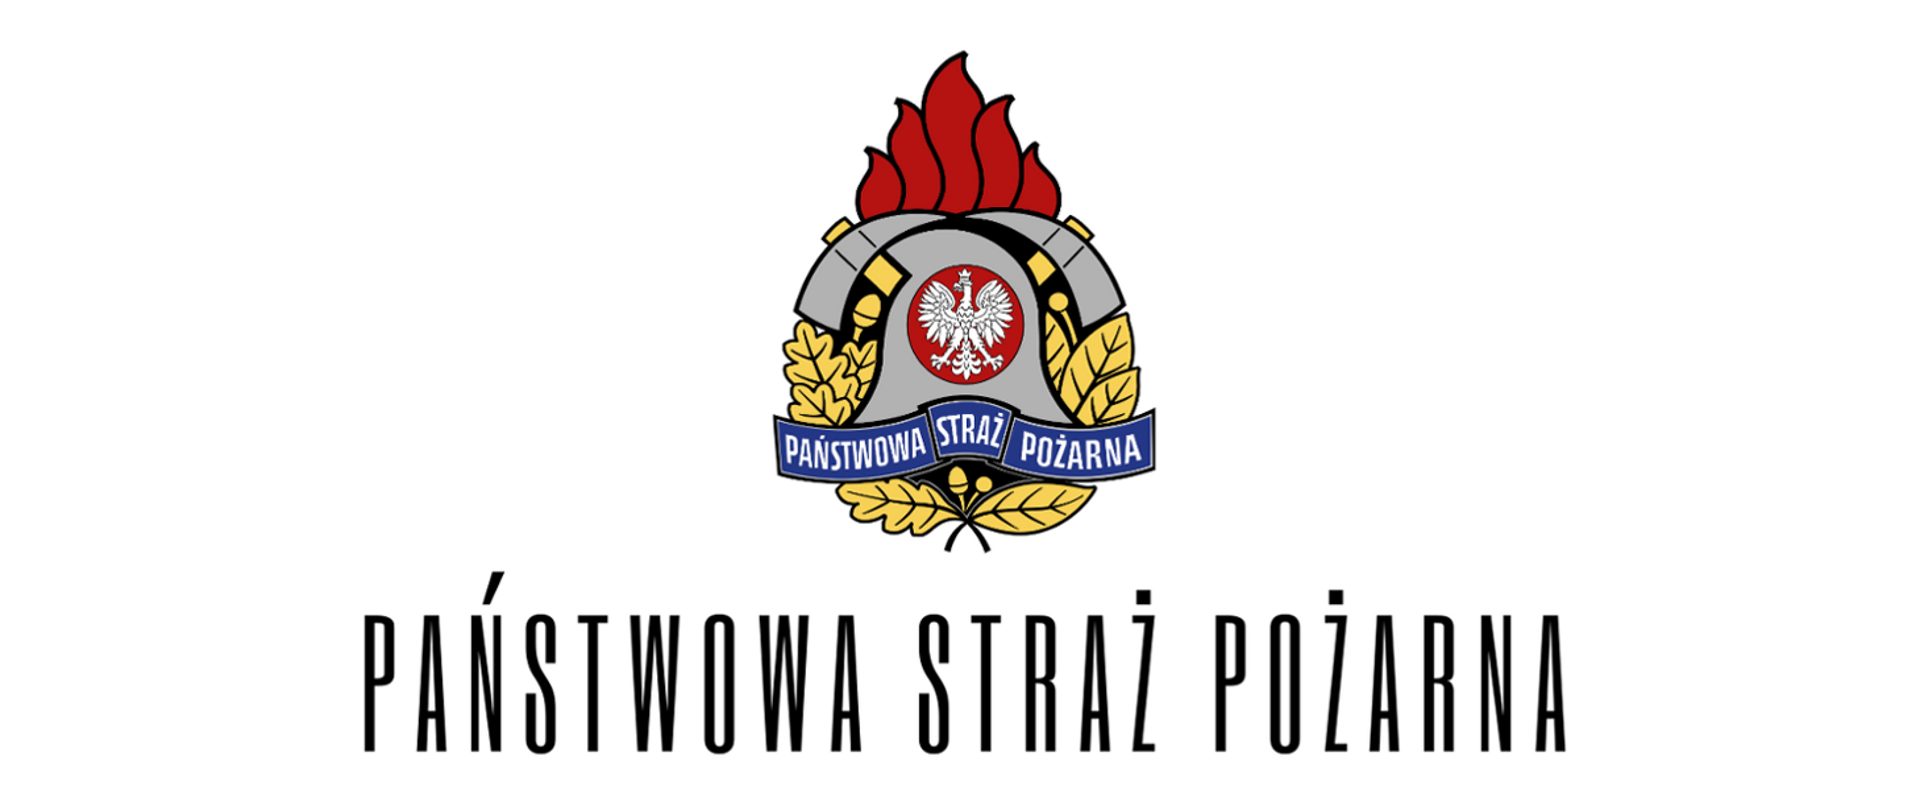 Kolorowe zdjęcie przedstawia logotyp państwowej straży pożarnej (hełm z białym orłem, dwa topory, płomień, żółte liście, i biały napis państwowa straż pożarna na niebieskiej wstędze). Pod spodem czarny napis państwowa straż pożarna.